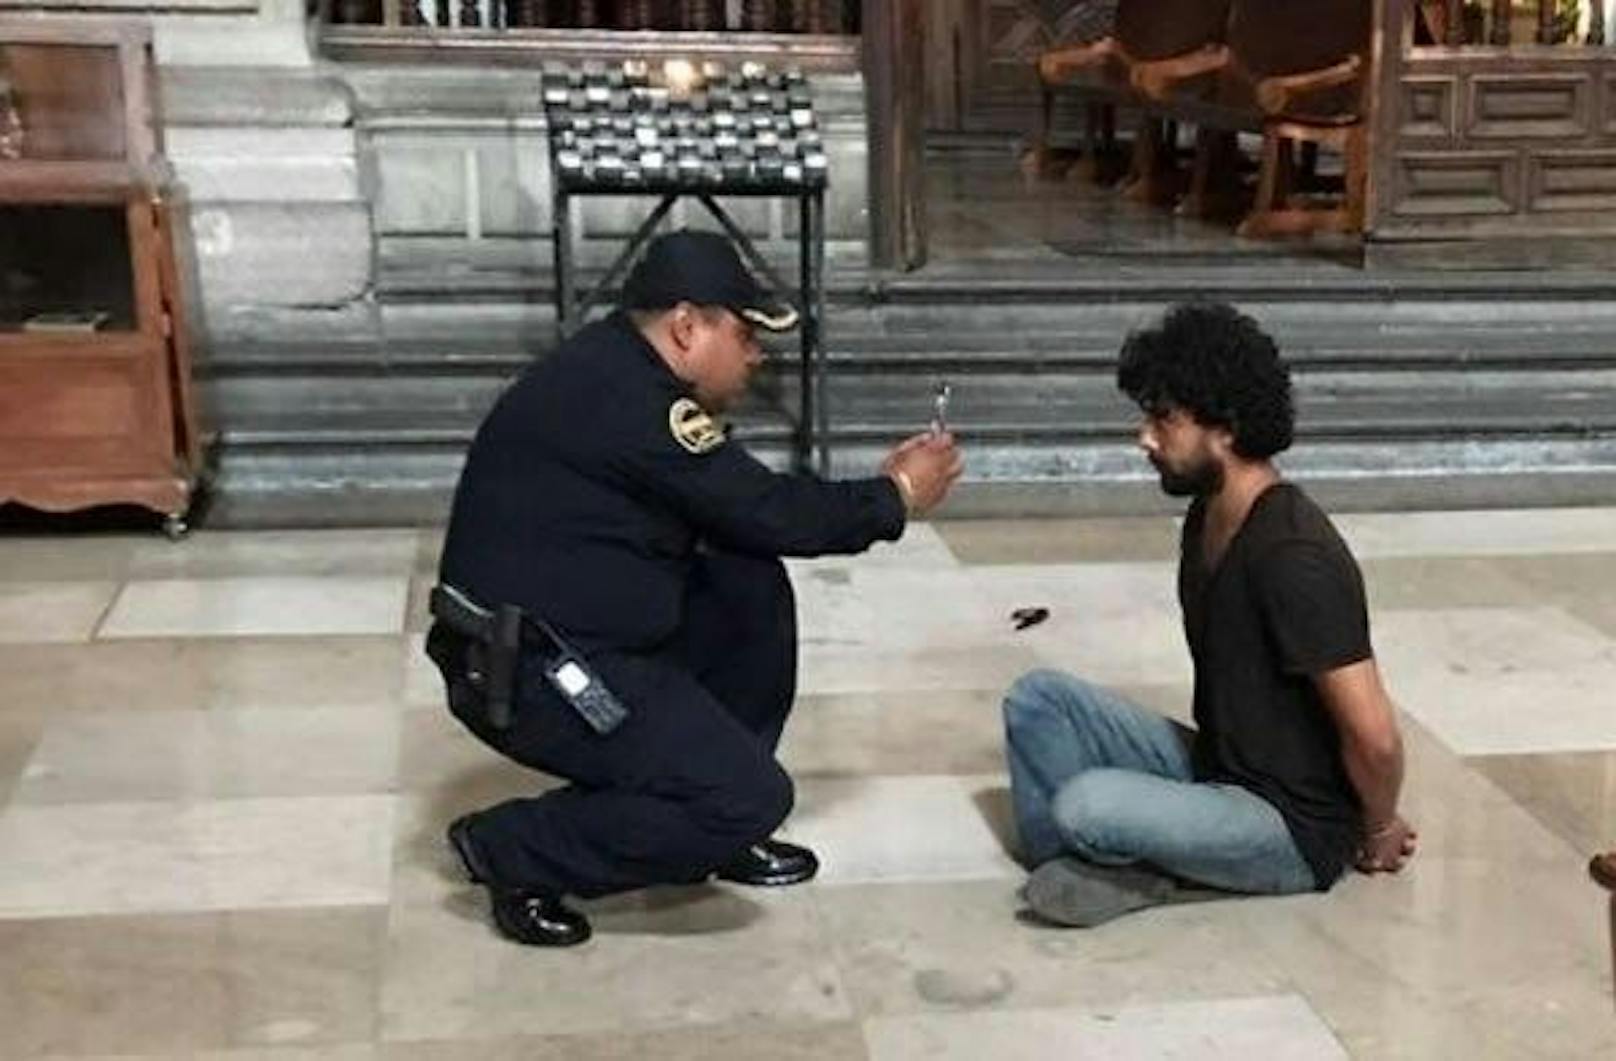 Gefasst! Der Täter sitzt mit Handschellen gefesselt auf dem Boden der Kirche - ein Polizist fotografiert ihn.